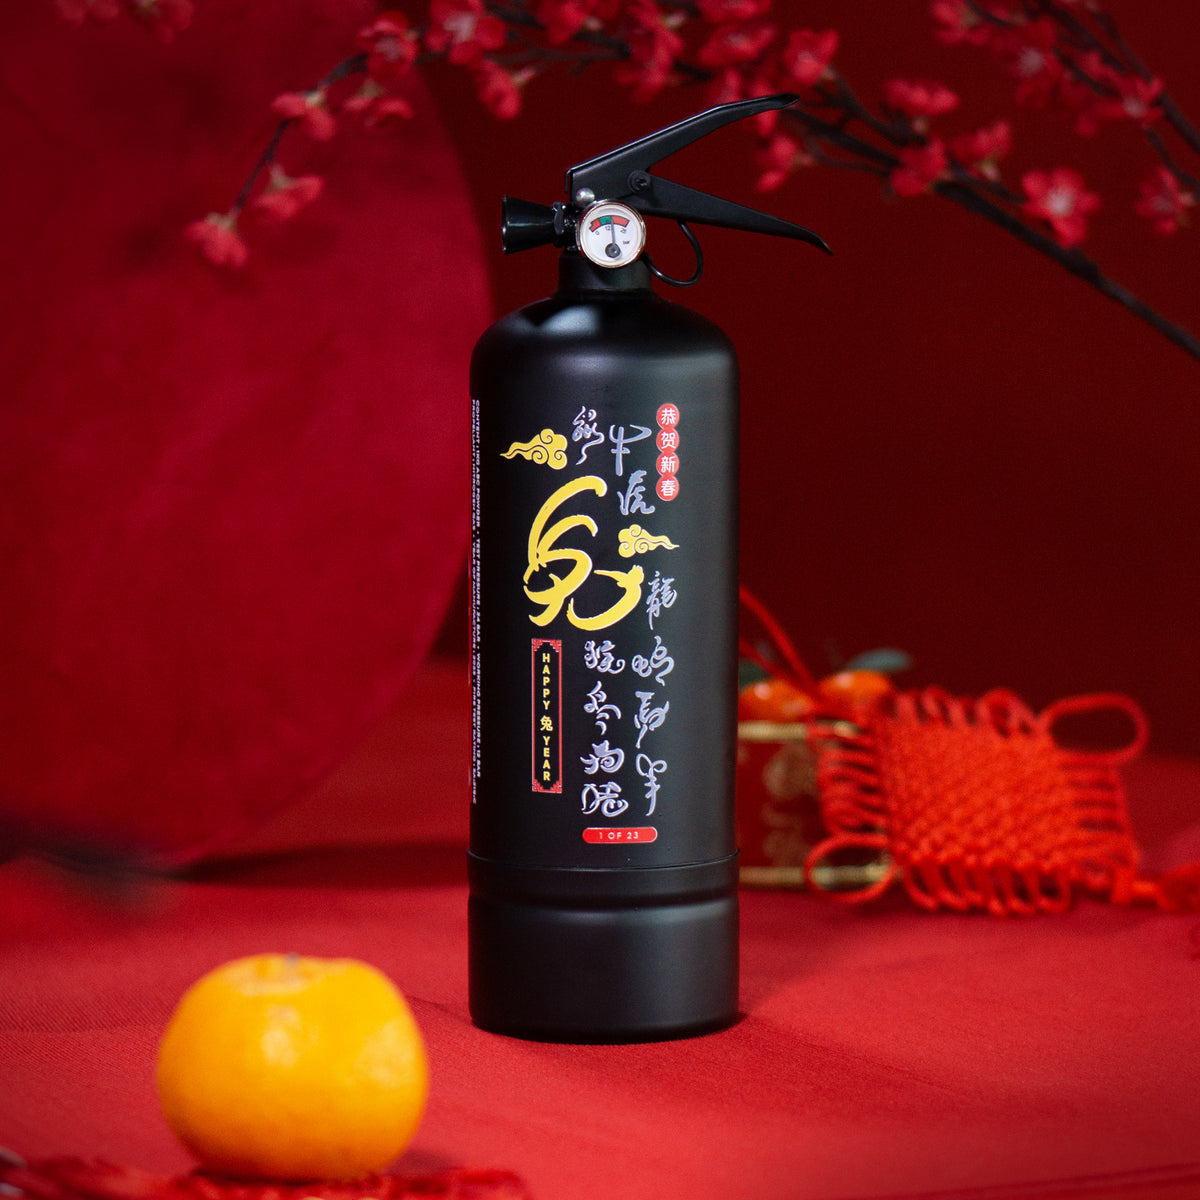 CNY2023 Fire Extinguisher